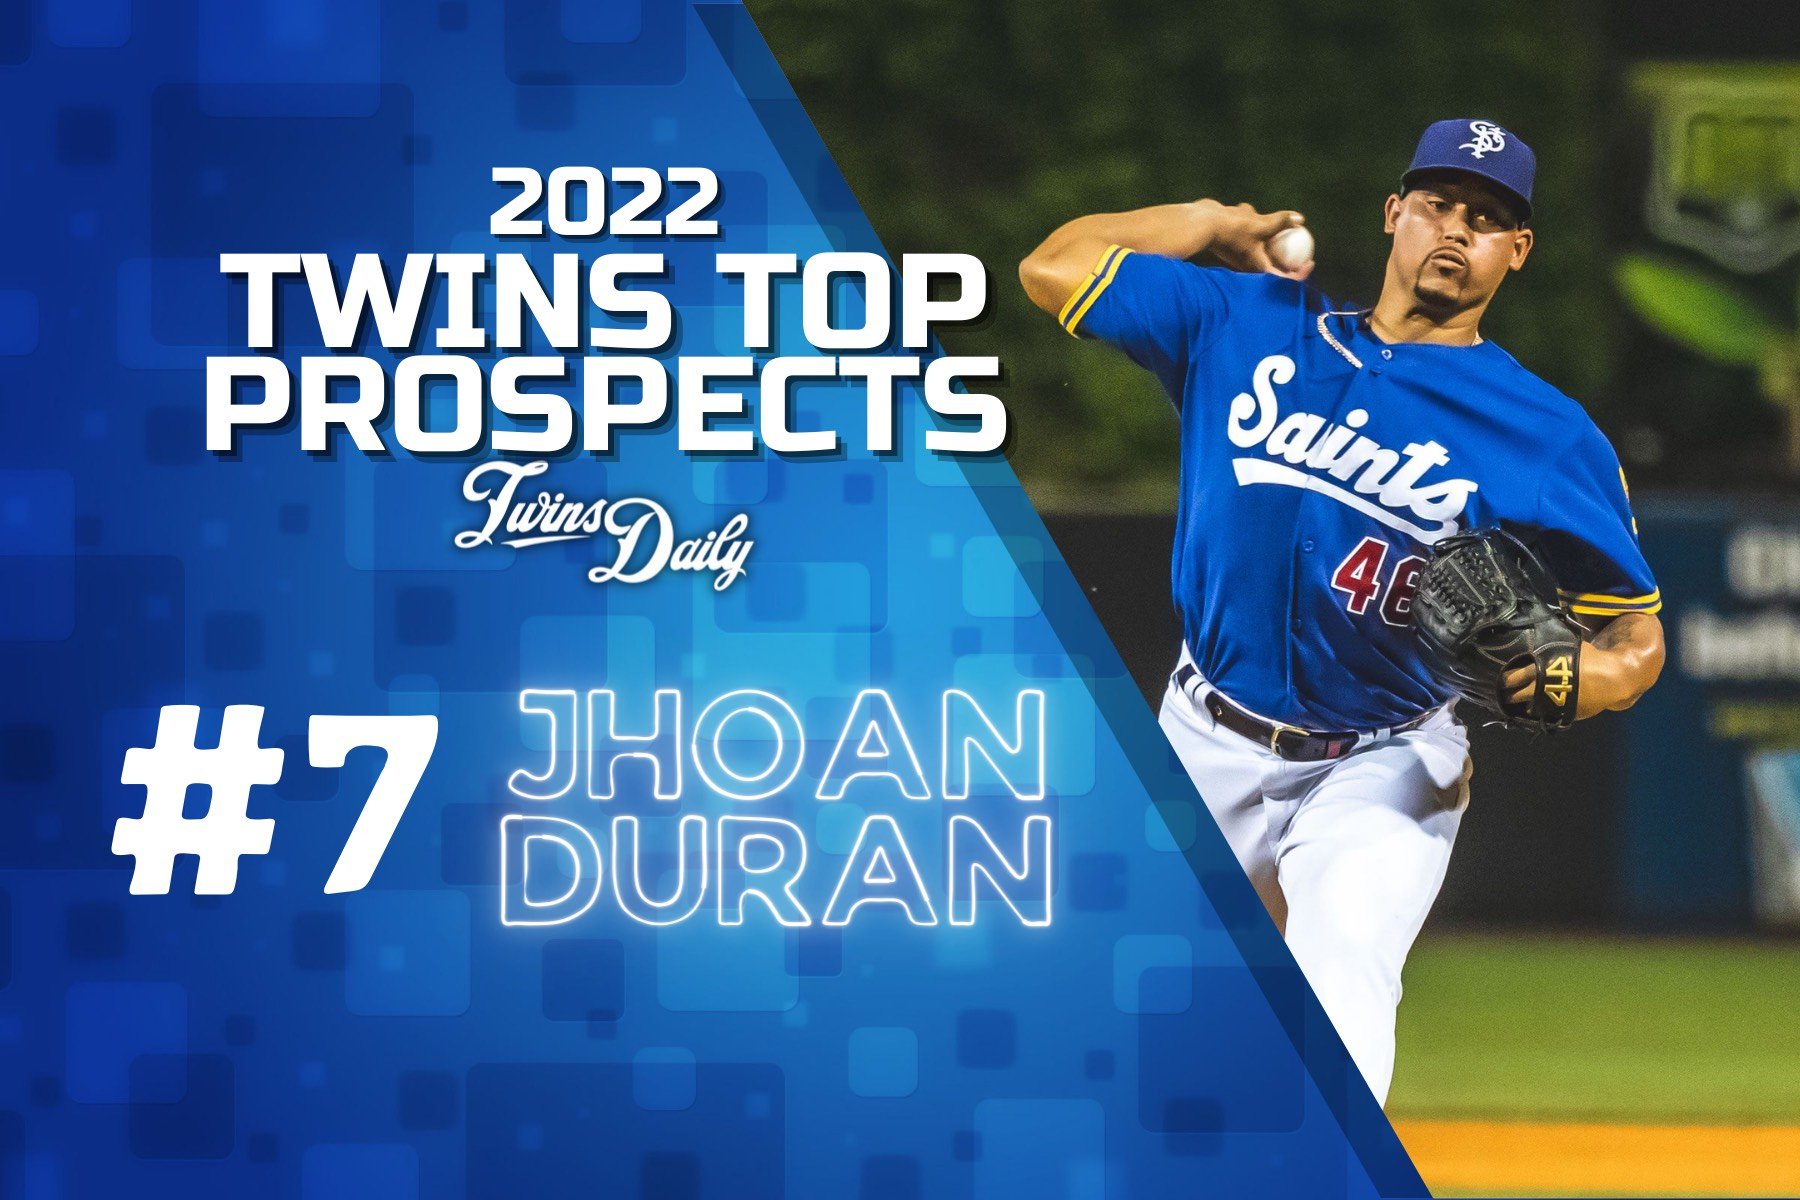 Hardest-throwing pitchers in MLB playoffs: Where Jhoan Duran